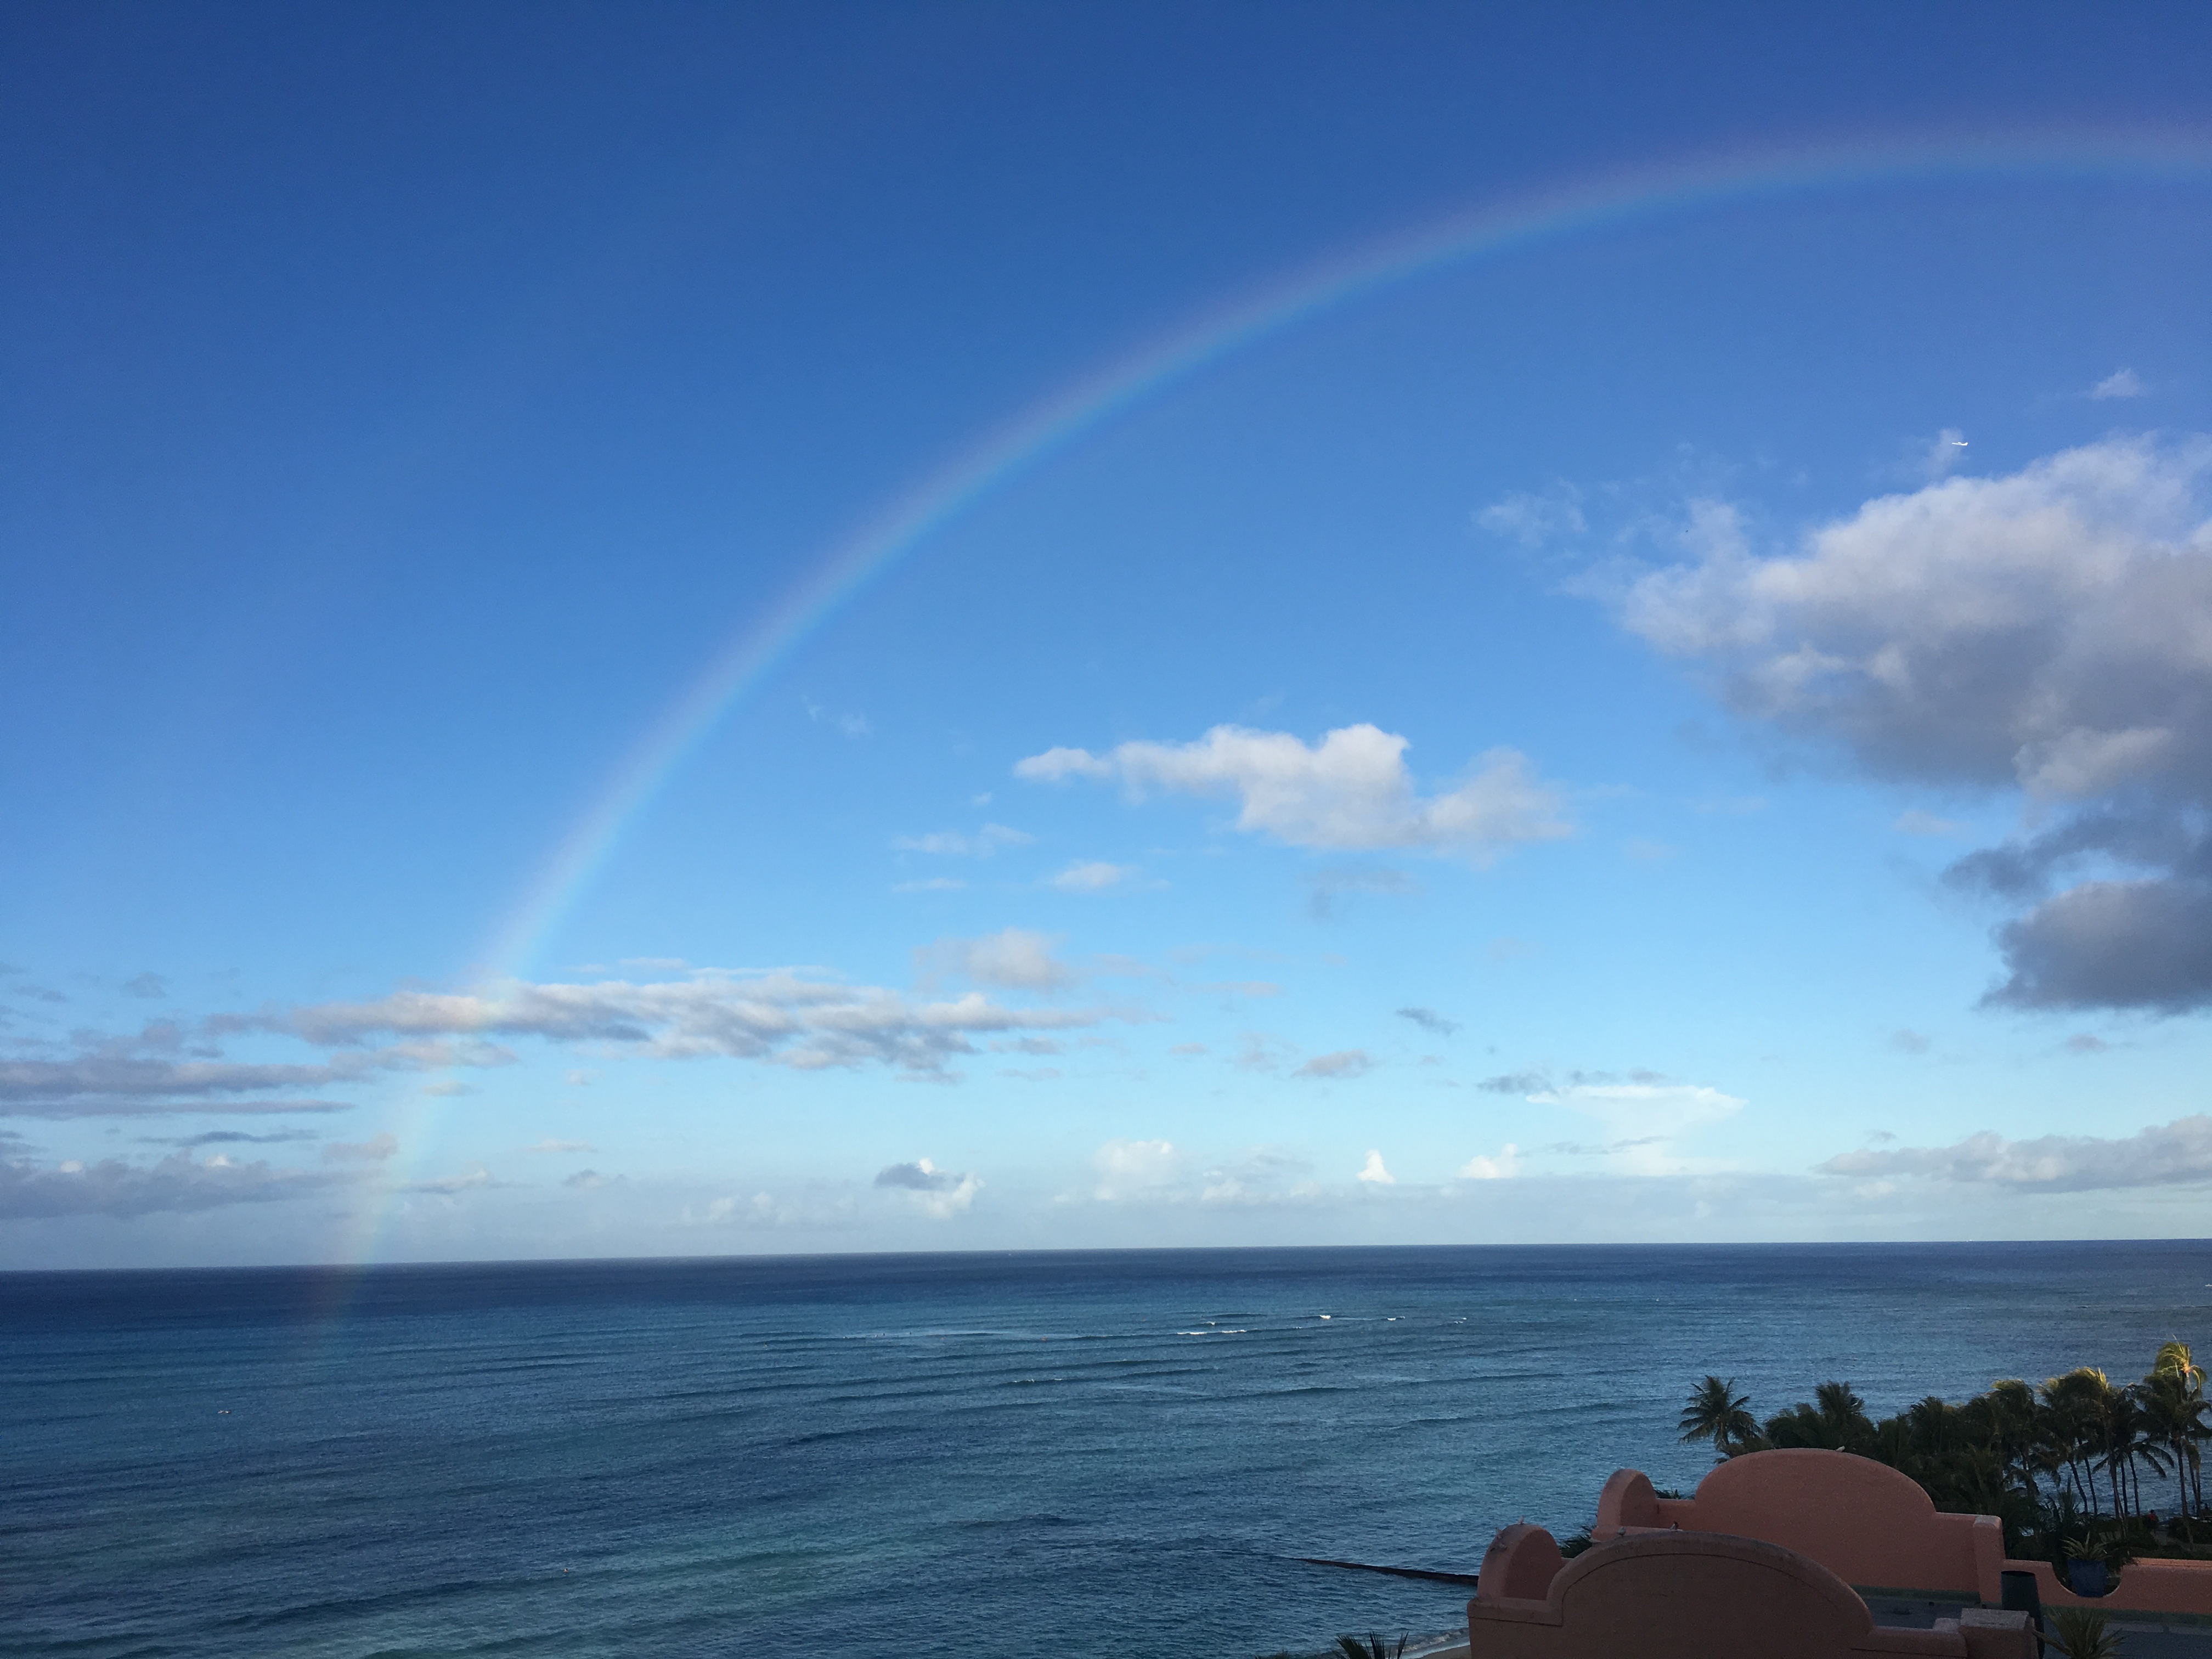 Rainbow over Waikiki Beach in Hawaii